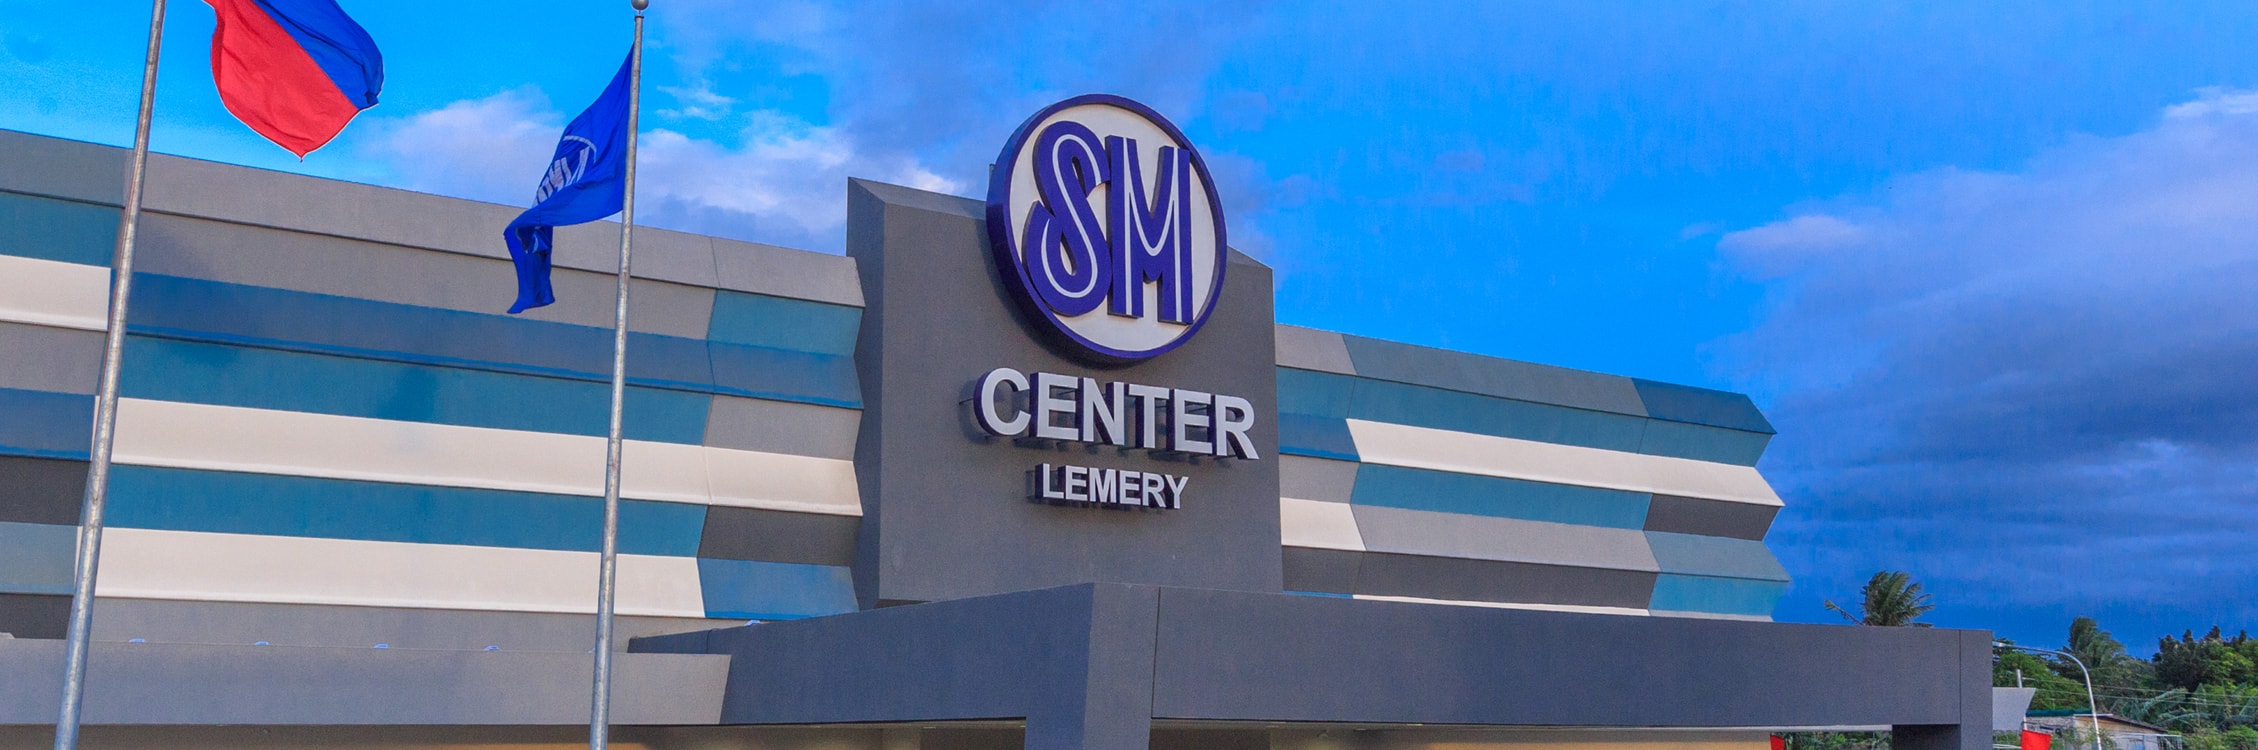 SM Center Lemery